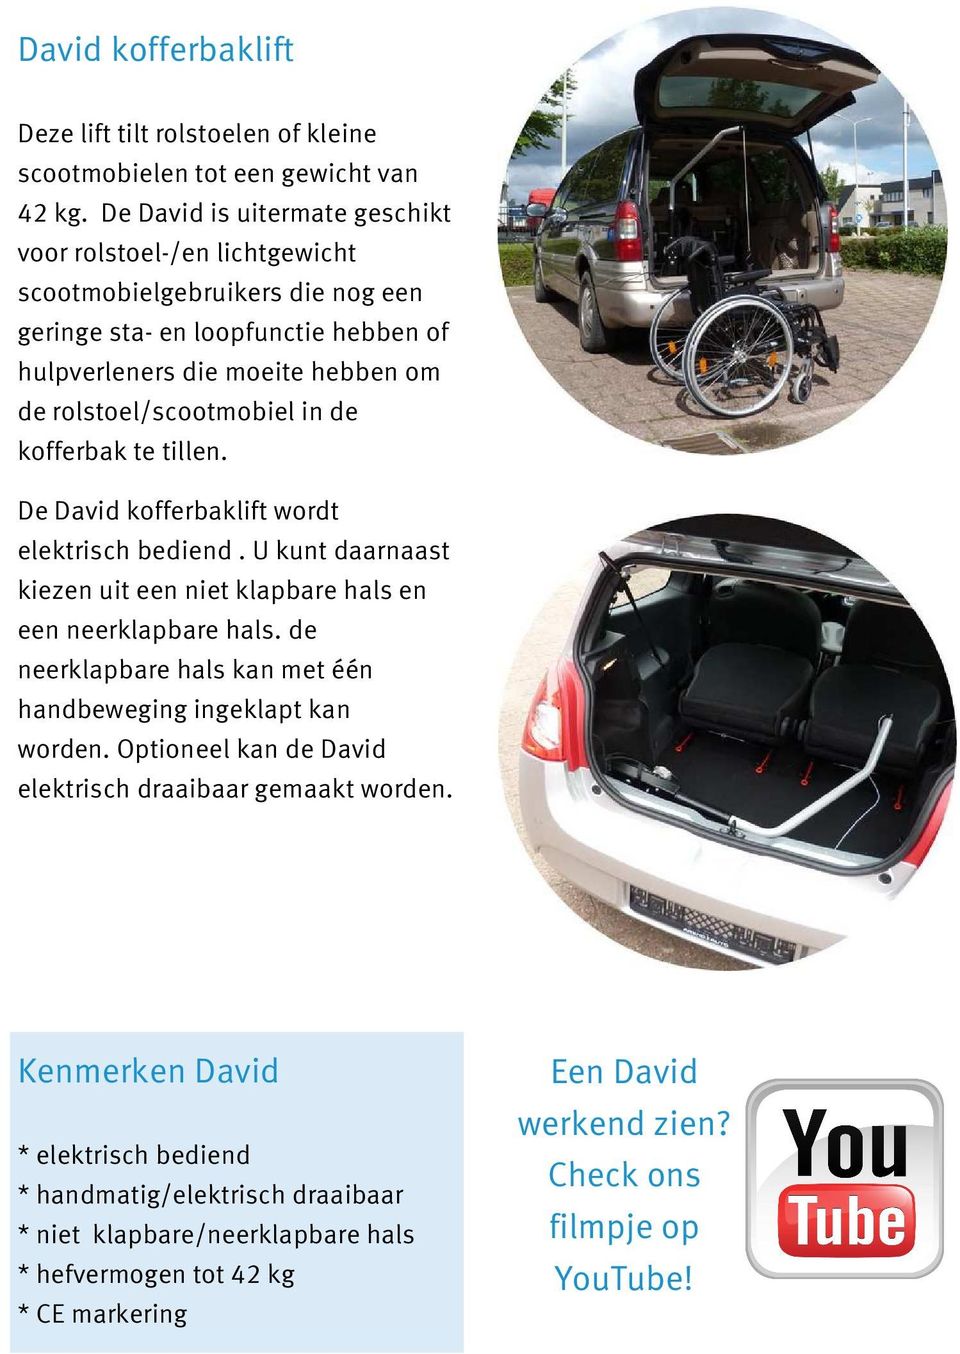 rolstoel/scootmobiel in de kofferbak te tillen. De David kofferbaklift wordt elektrisch bediend. U kunt daarnaast kiezen uit een niet klapbare hals en een neerklapbare hals.